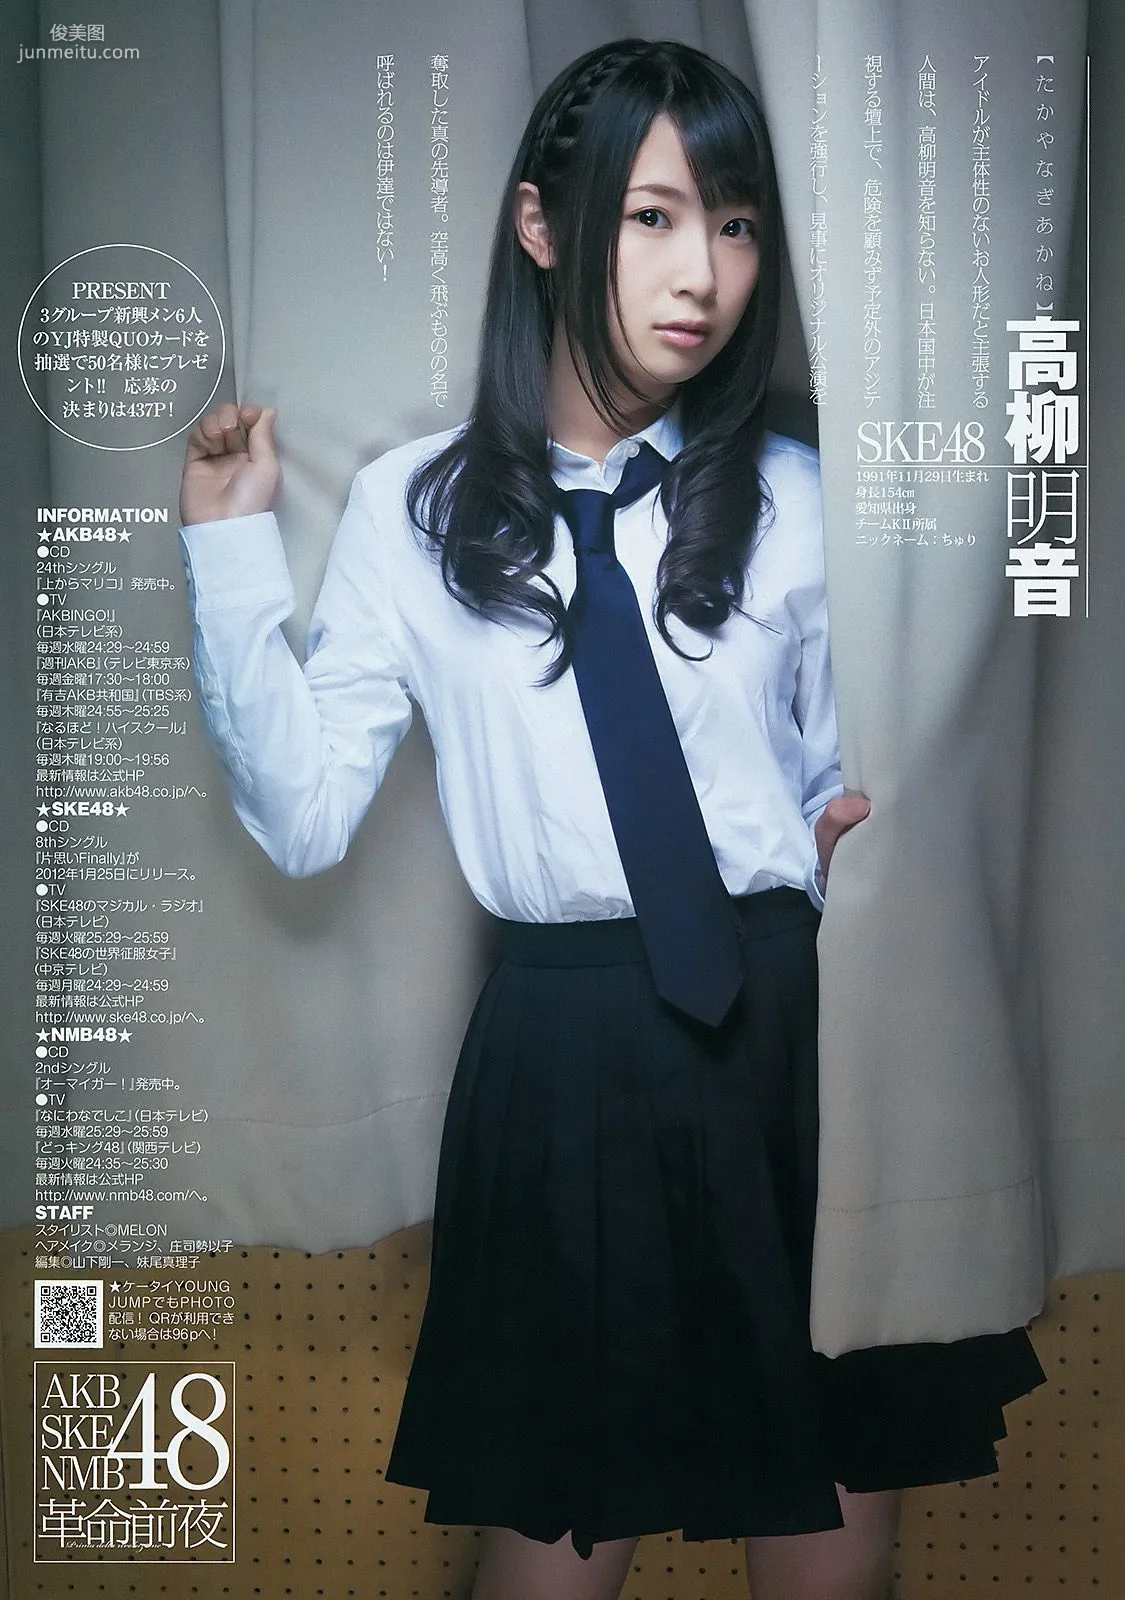 AKB48 NMB48 SKE48 仮面ライダーGIRLS [週刊ヤングジャンプ] 2012年No.04-05写真杂志7